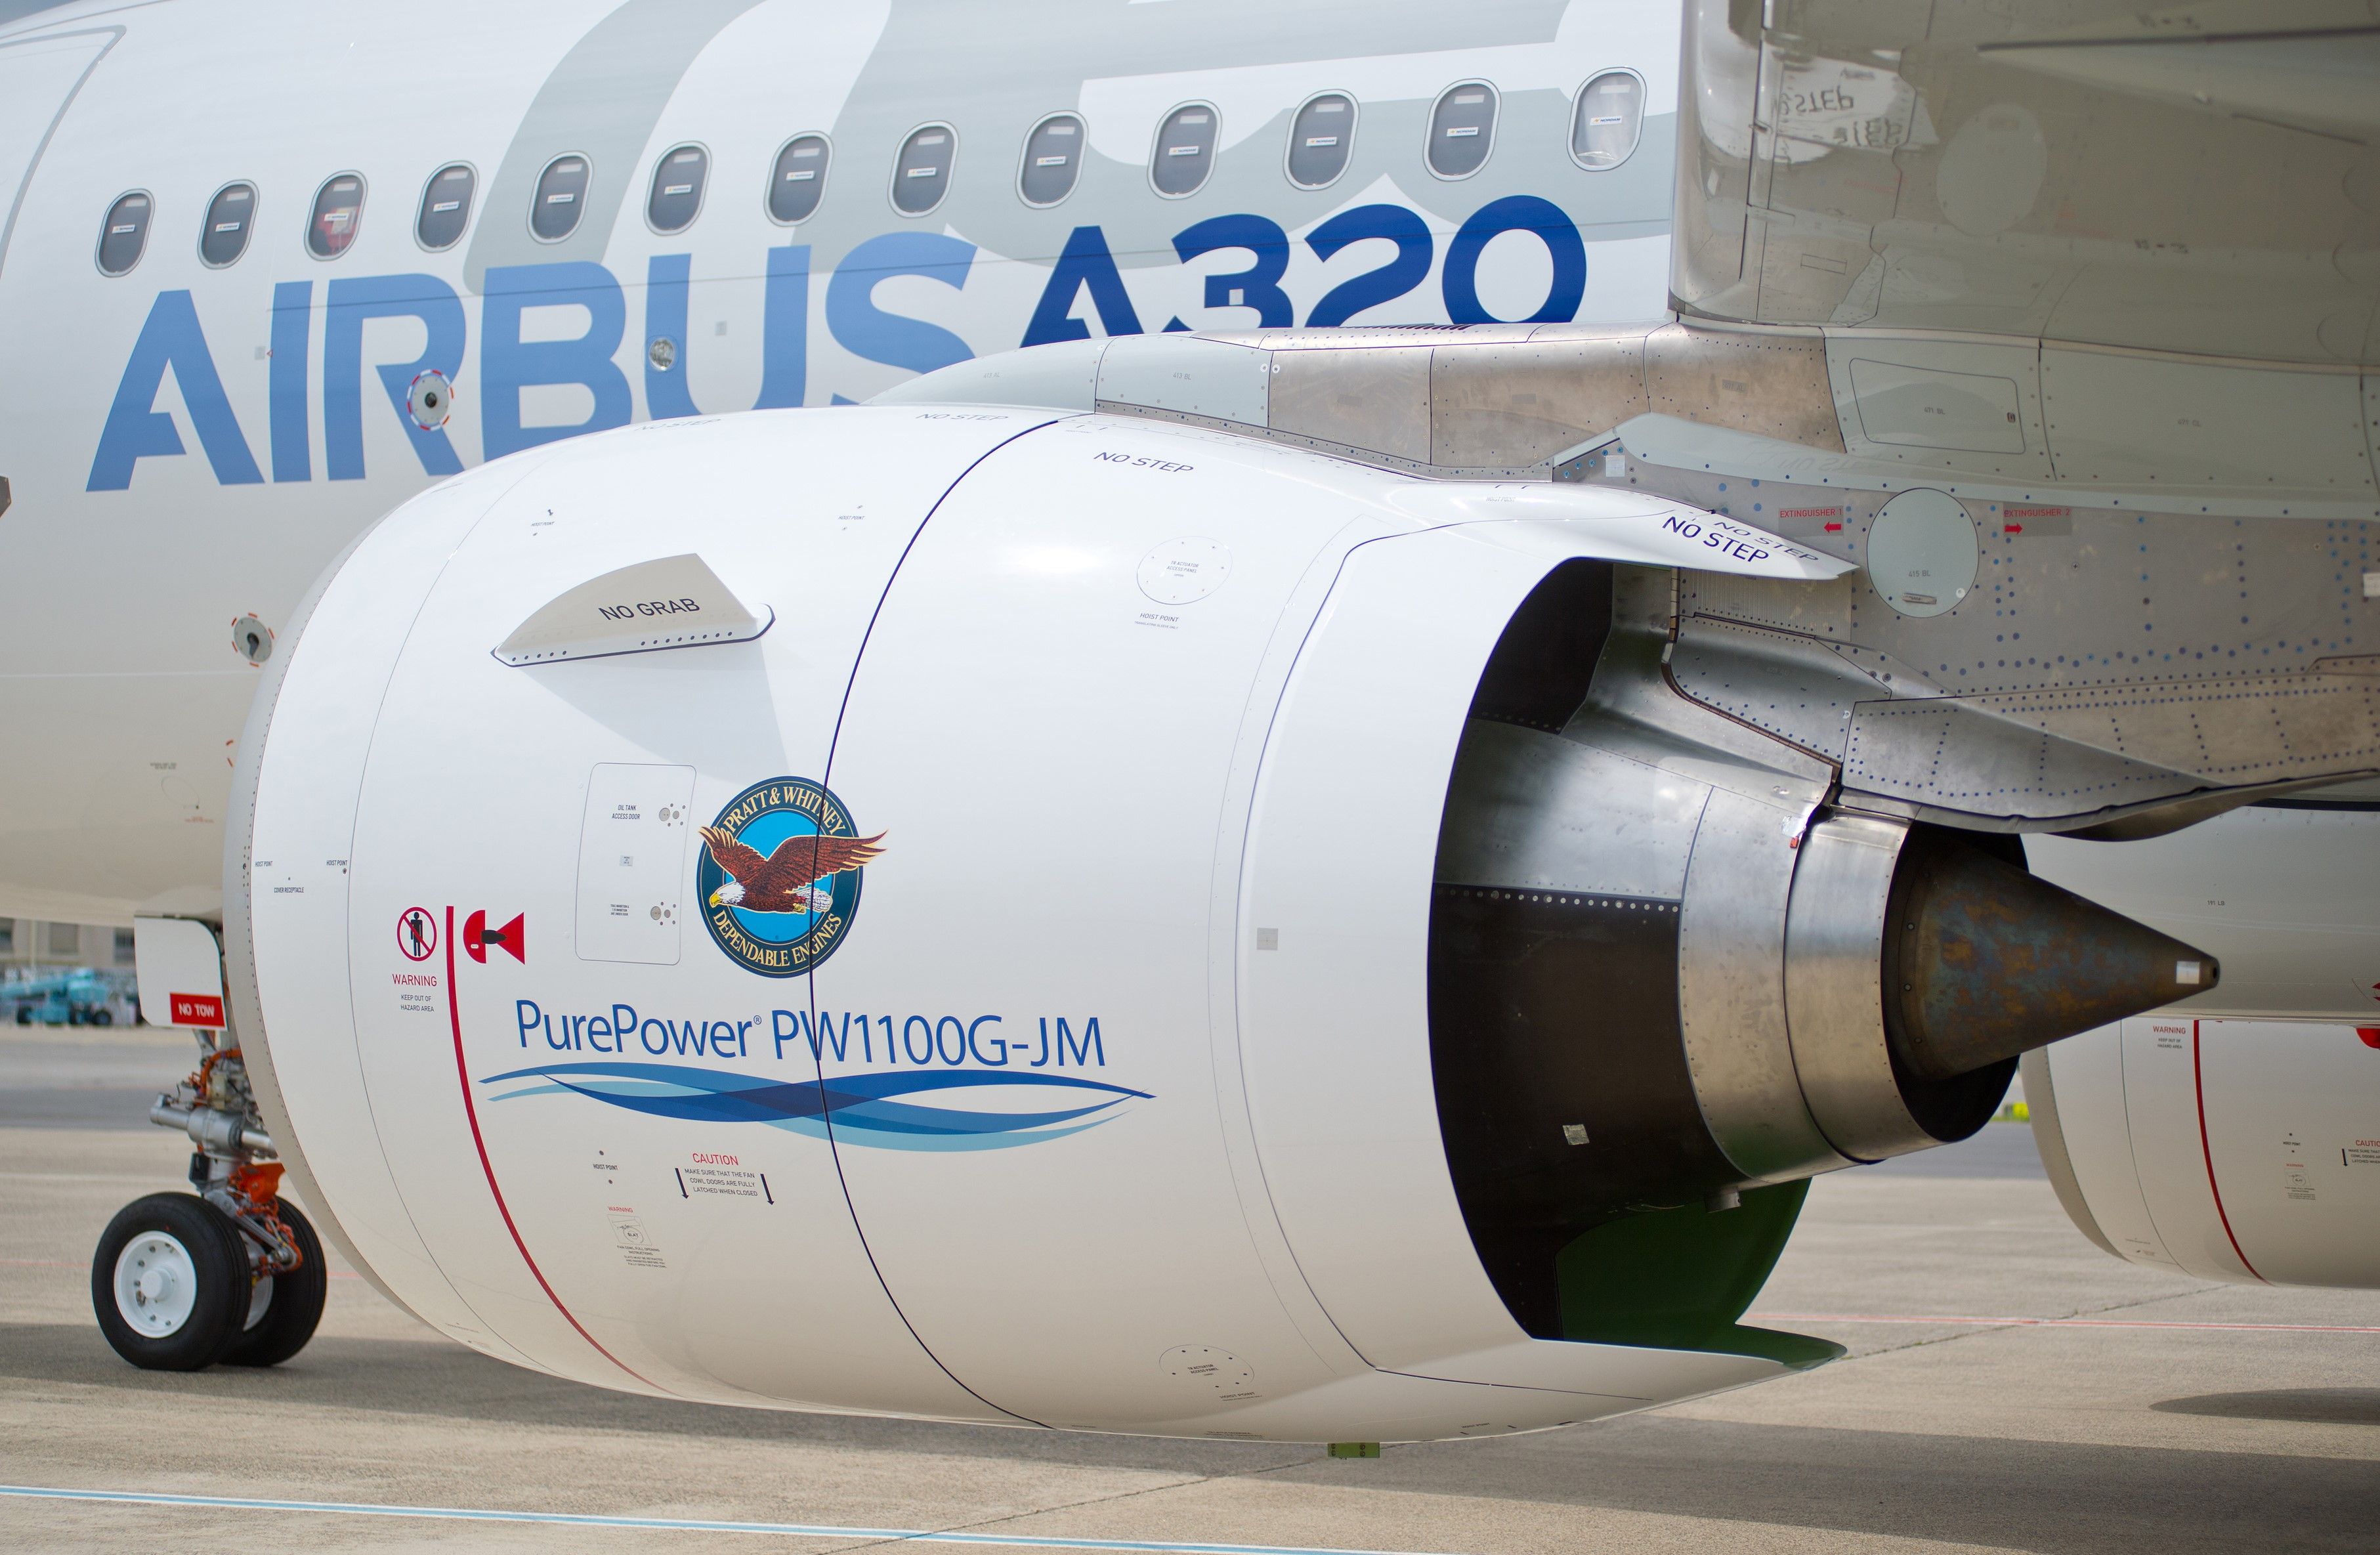 A close up of a P&W engine of an Airbus A320neo aircraft